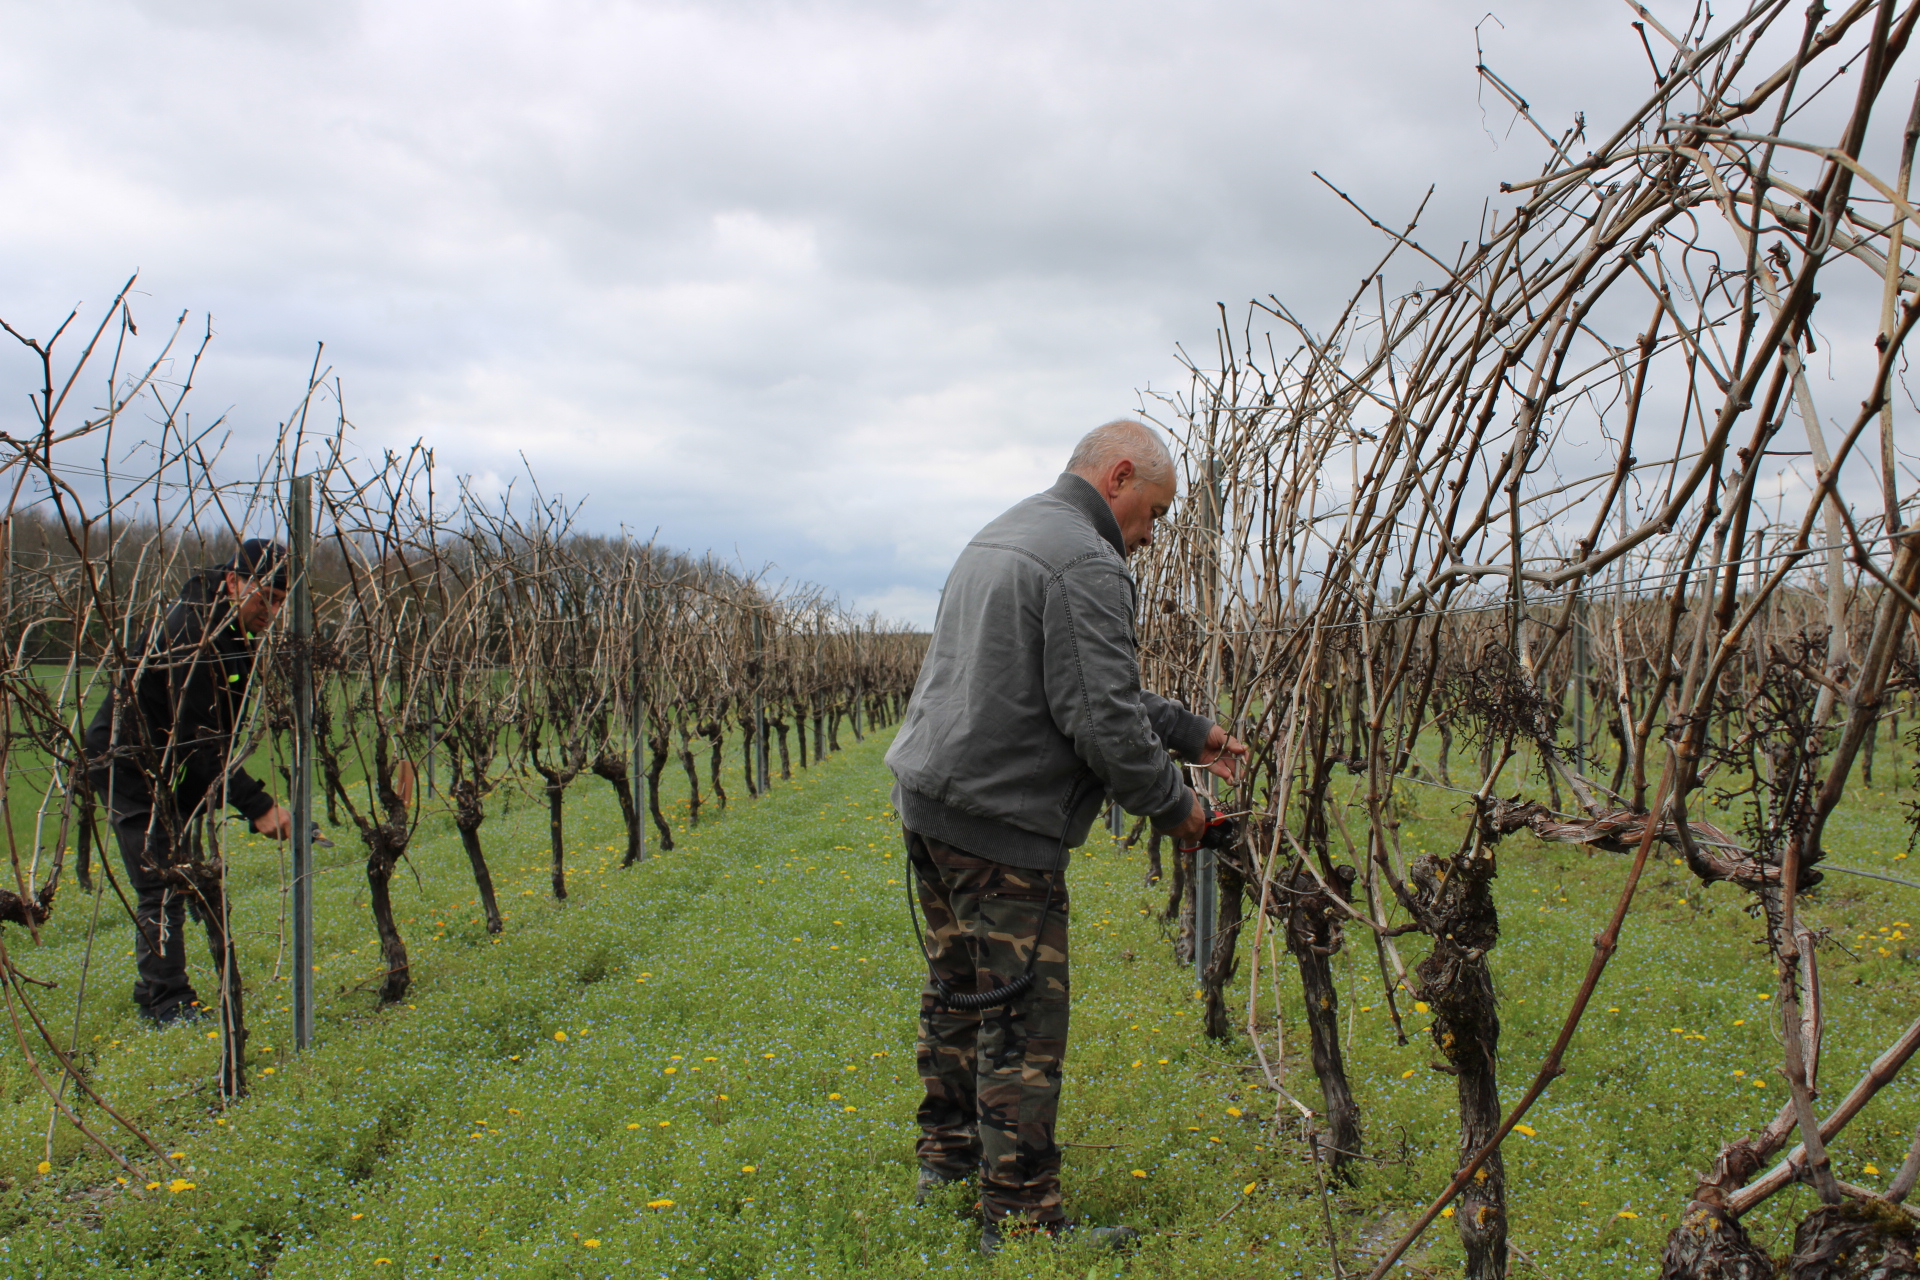 Pourquoi ce viticulteur de 60 ans n'a pas encore transmis son